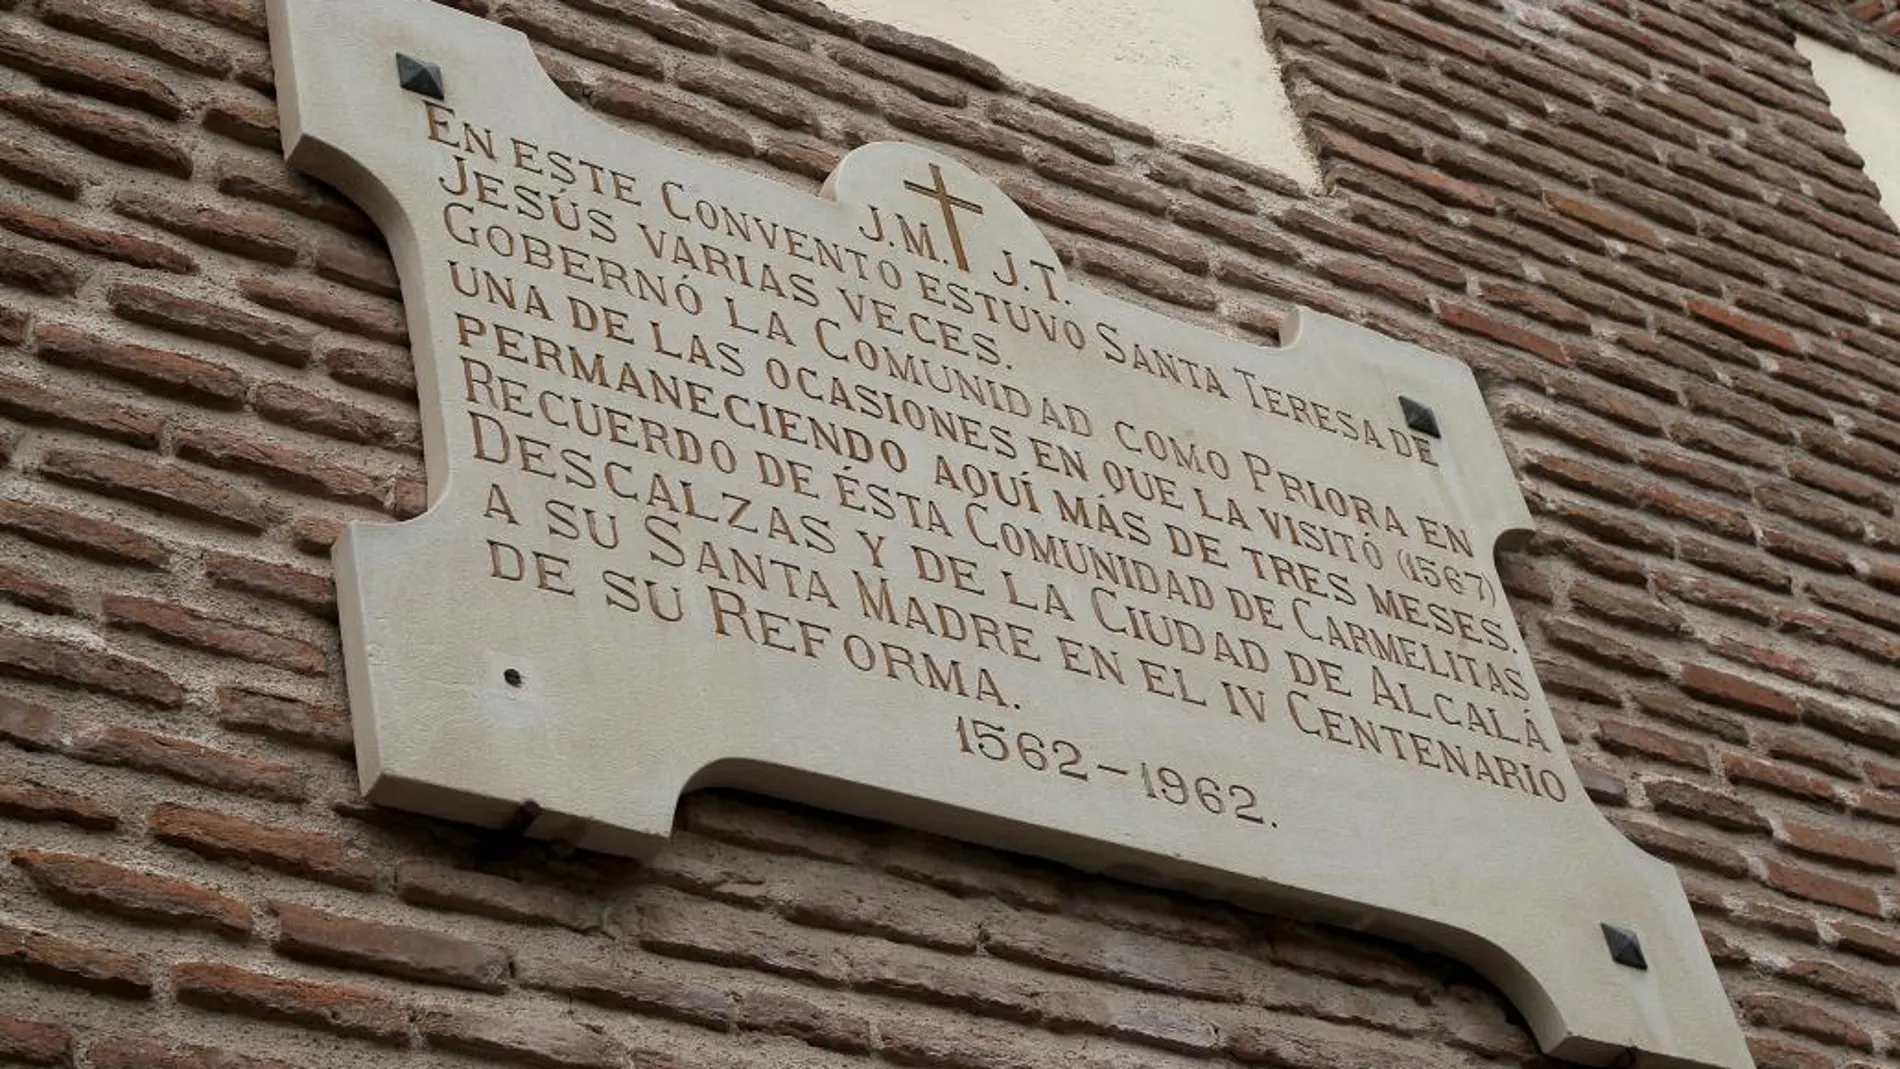 Los restos de la hermana del escritor se encuentran en otro convento, en Alcalá en el que una placa le rinde homenaje.